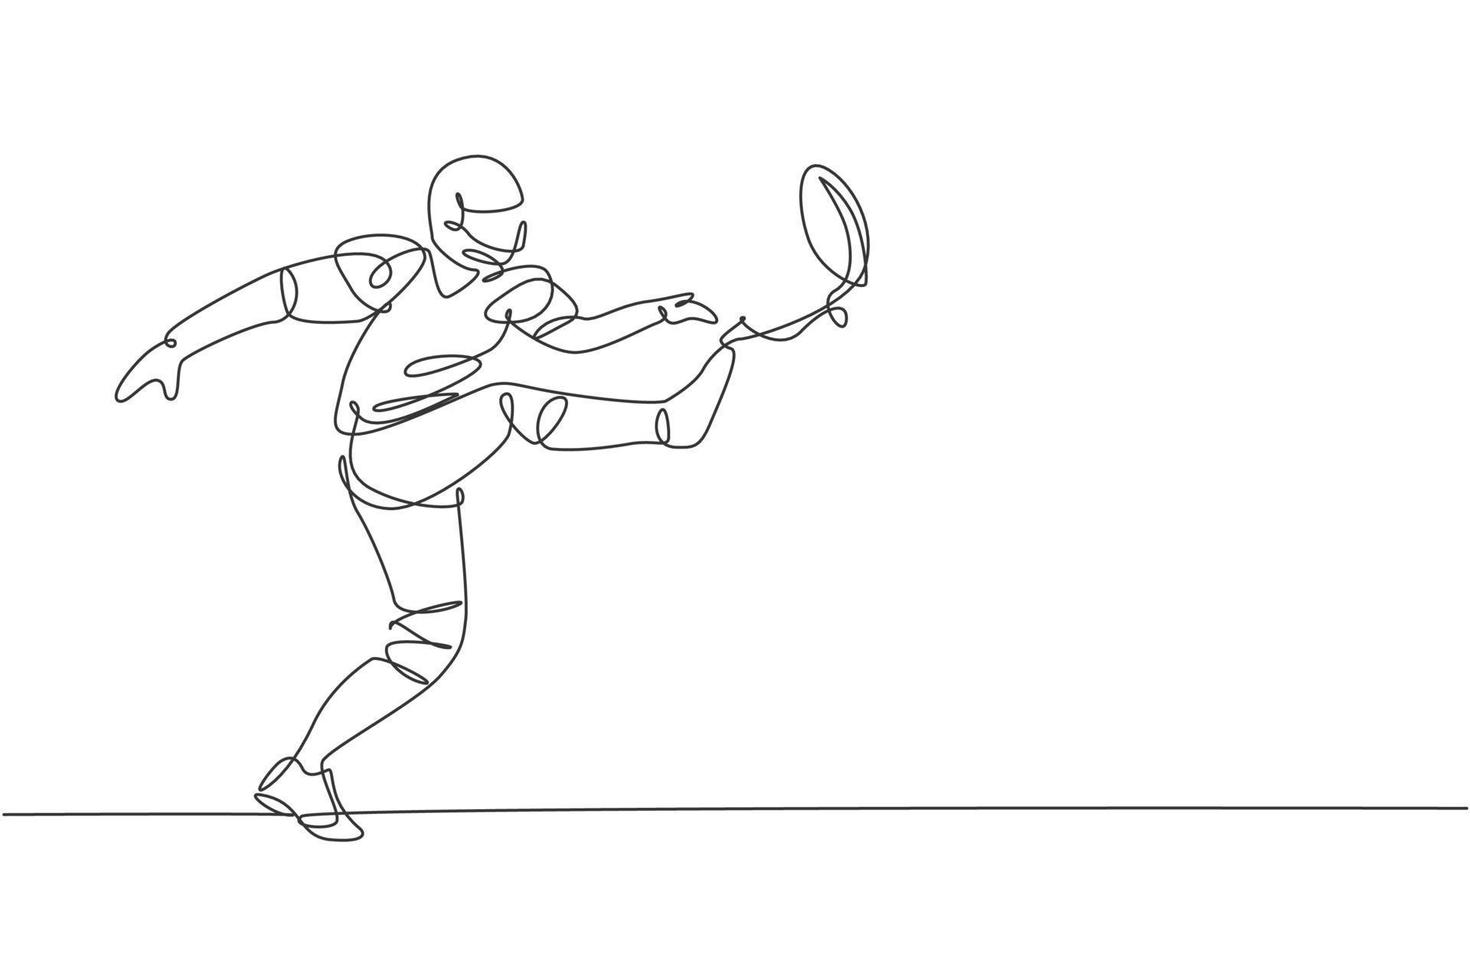 un disegno a linea singola di un energico giocatore di football americano che calcia forte la palla nell'arena per la promozione della lega. concetto di competizione sportiva. illustrazione vettoriale moderna di disegno a linea continua